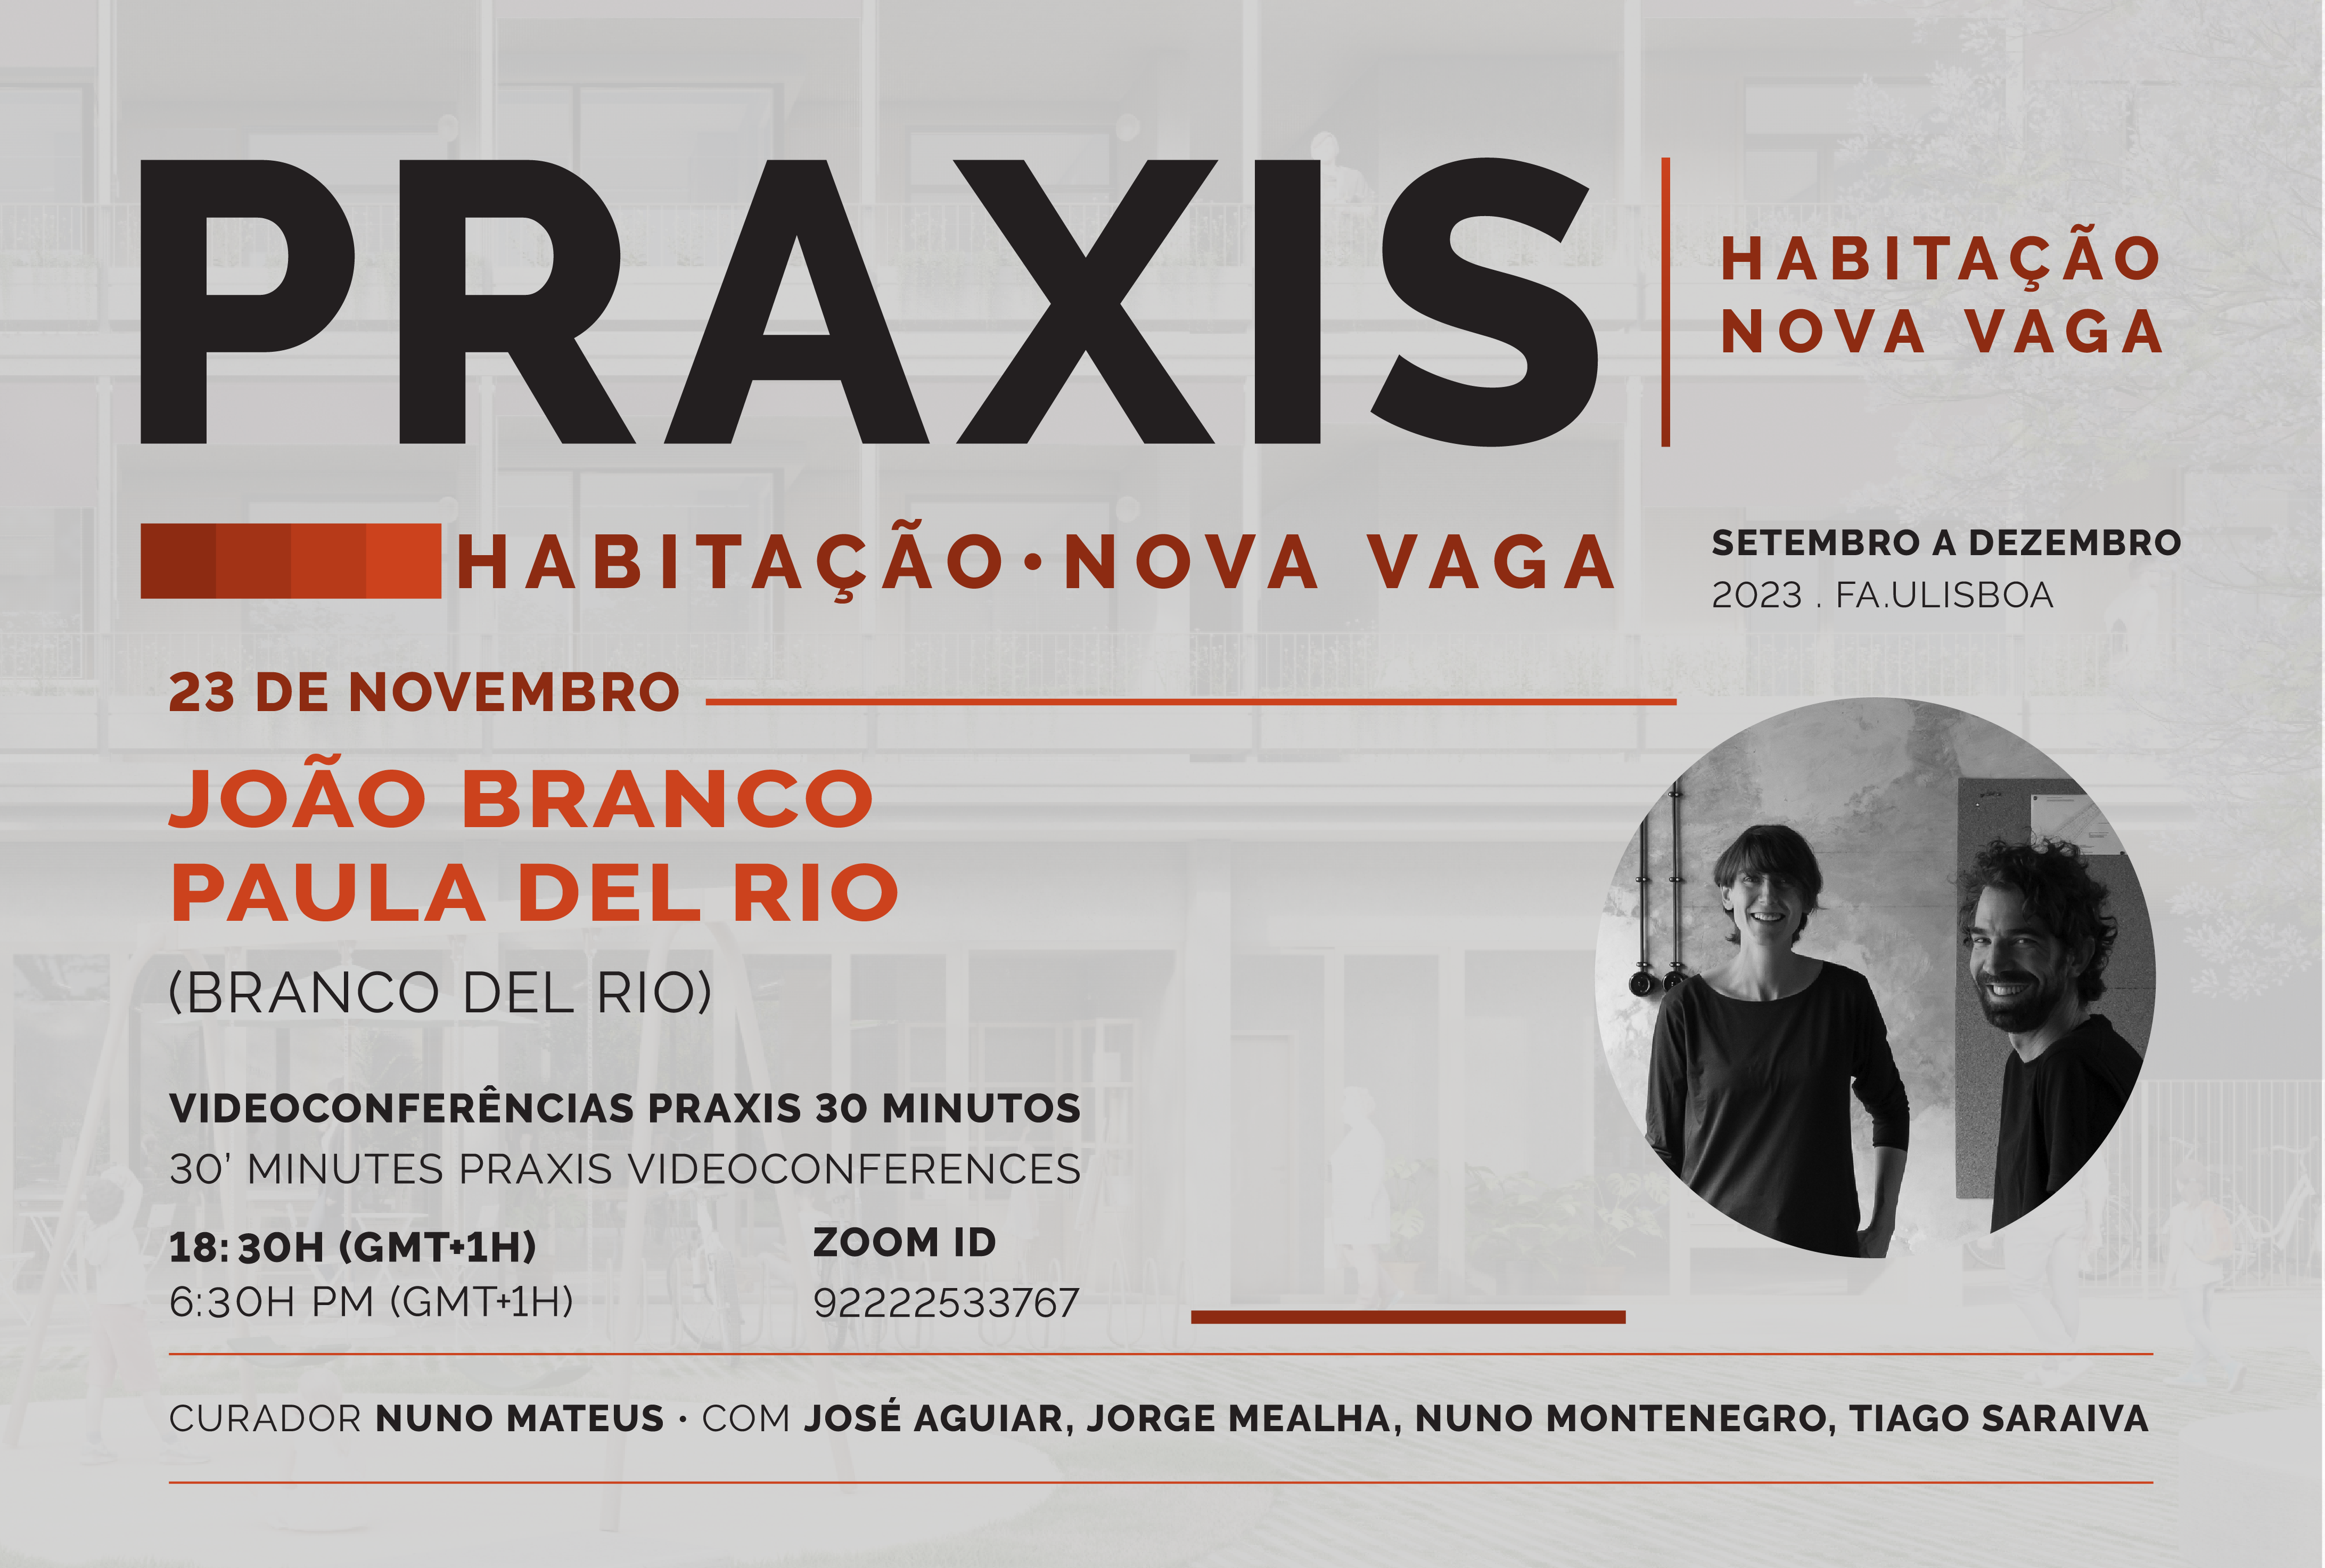 Praxis | Habitação Nova Vaga com João Branco e Paula del Rio (Branco Del Rio), dia 23 de novembro, pelas 18h30, online